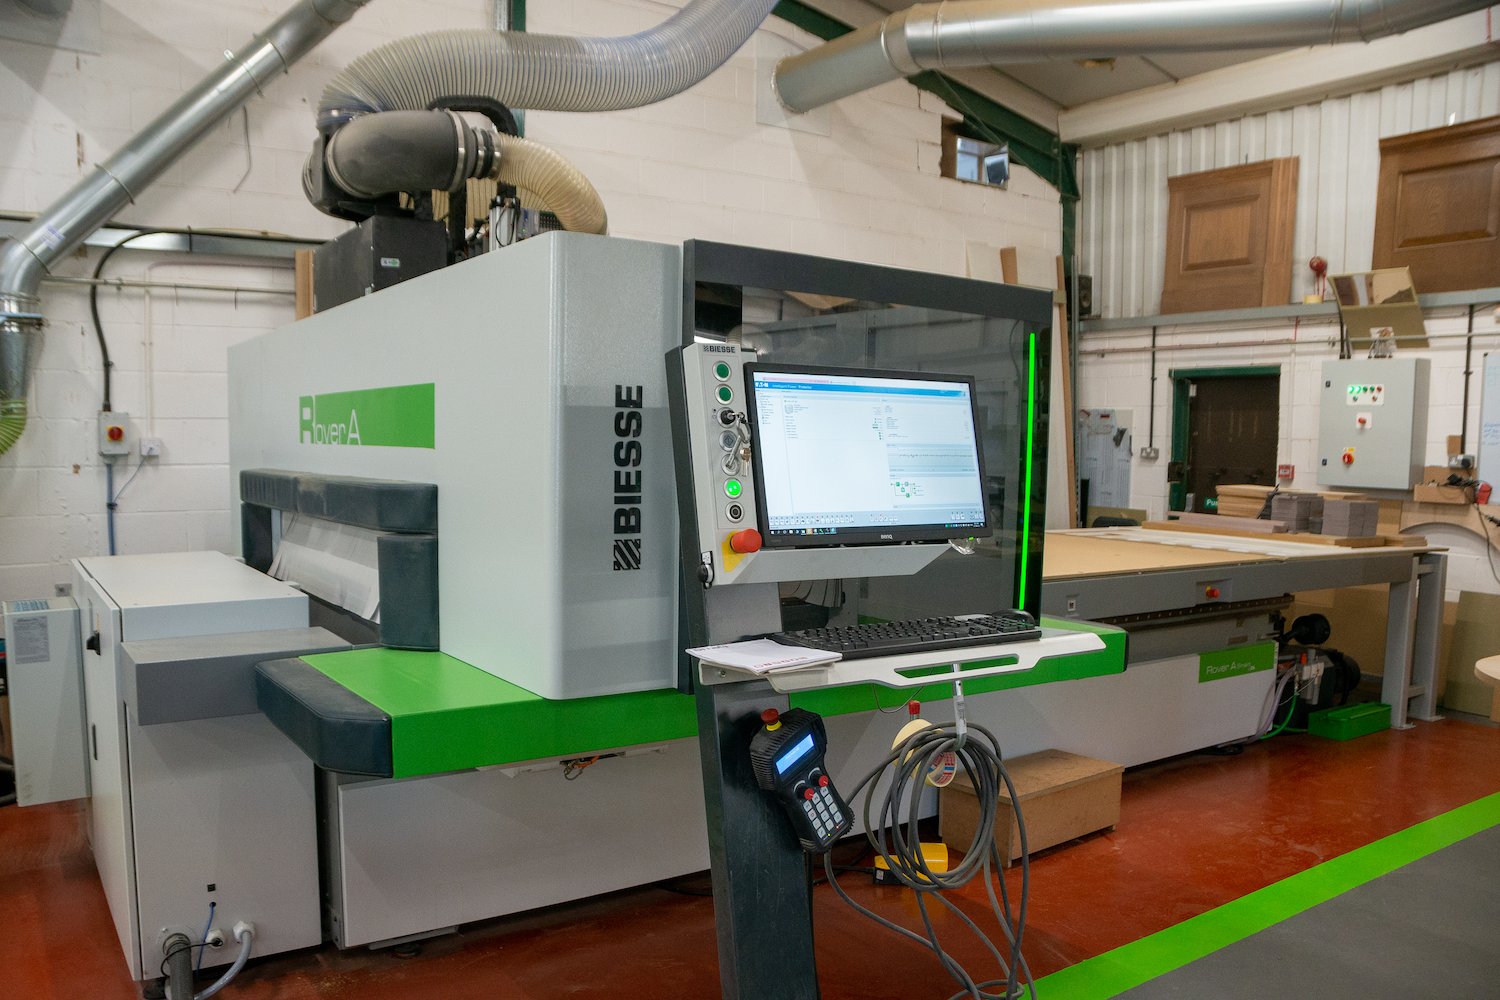 Image of Biesse CNC Machine in a workshop